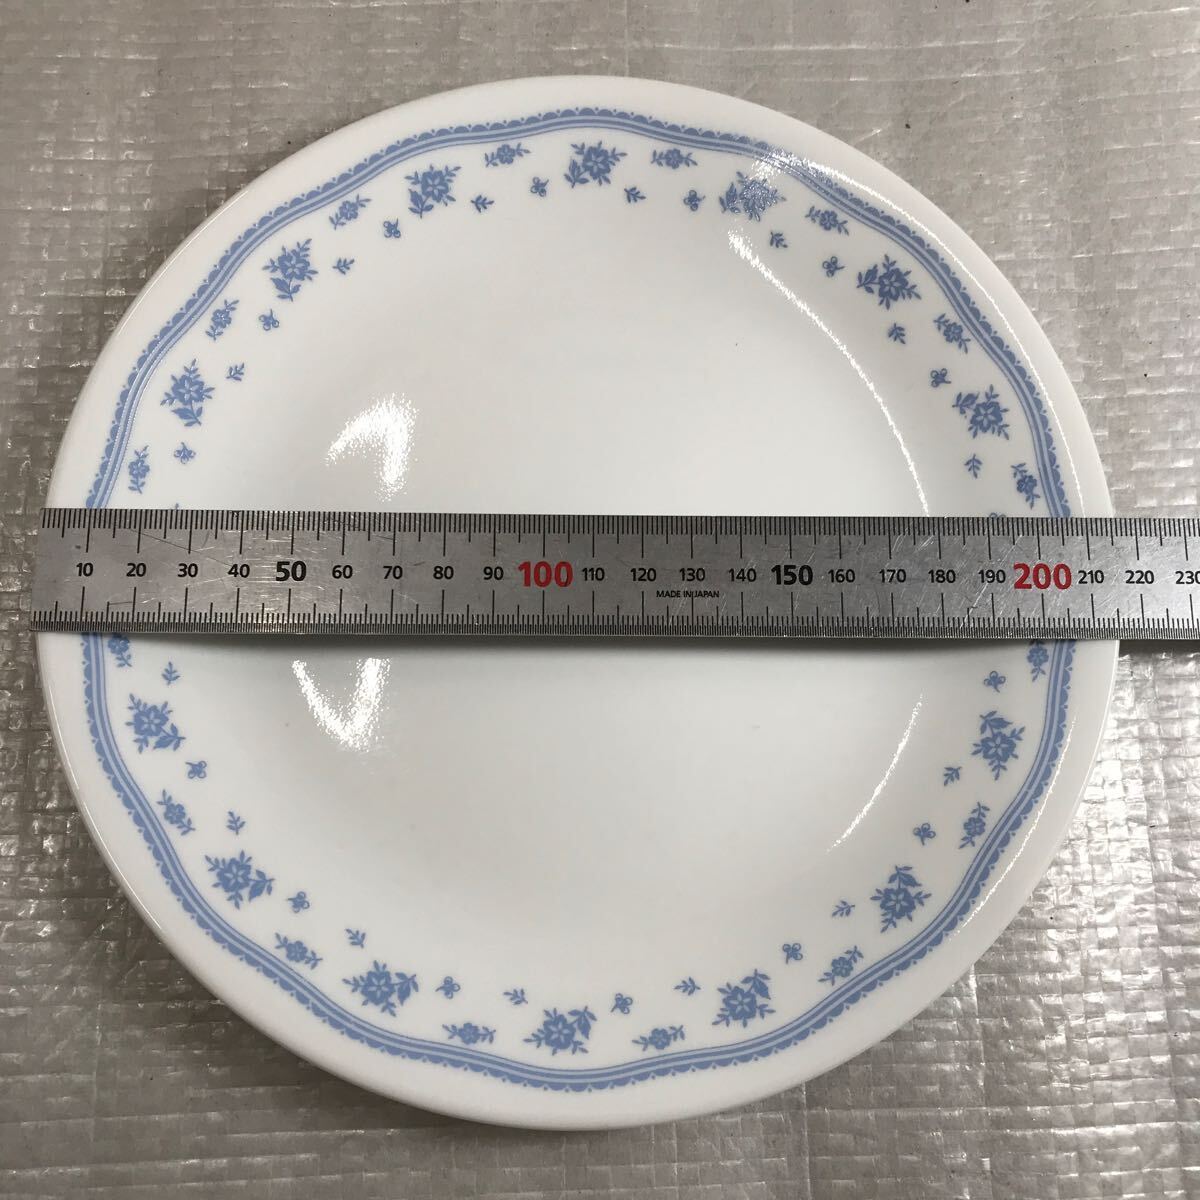 CORELLE コレール モーニングブルー プレート 洋食器 食器 大皿 中皿 深皿 平皿 4点セット 中古品_画像5